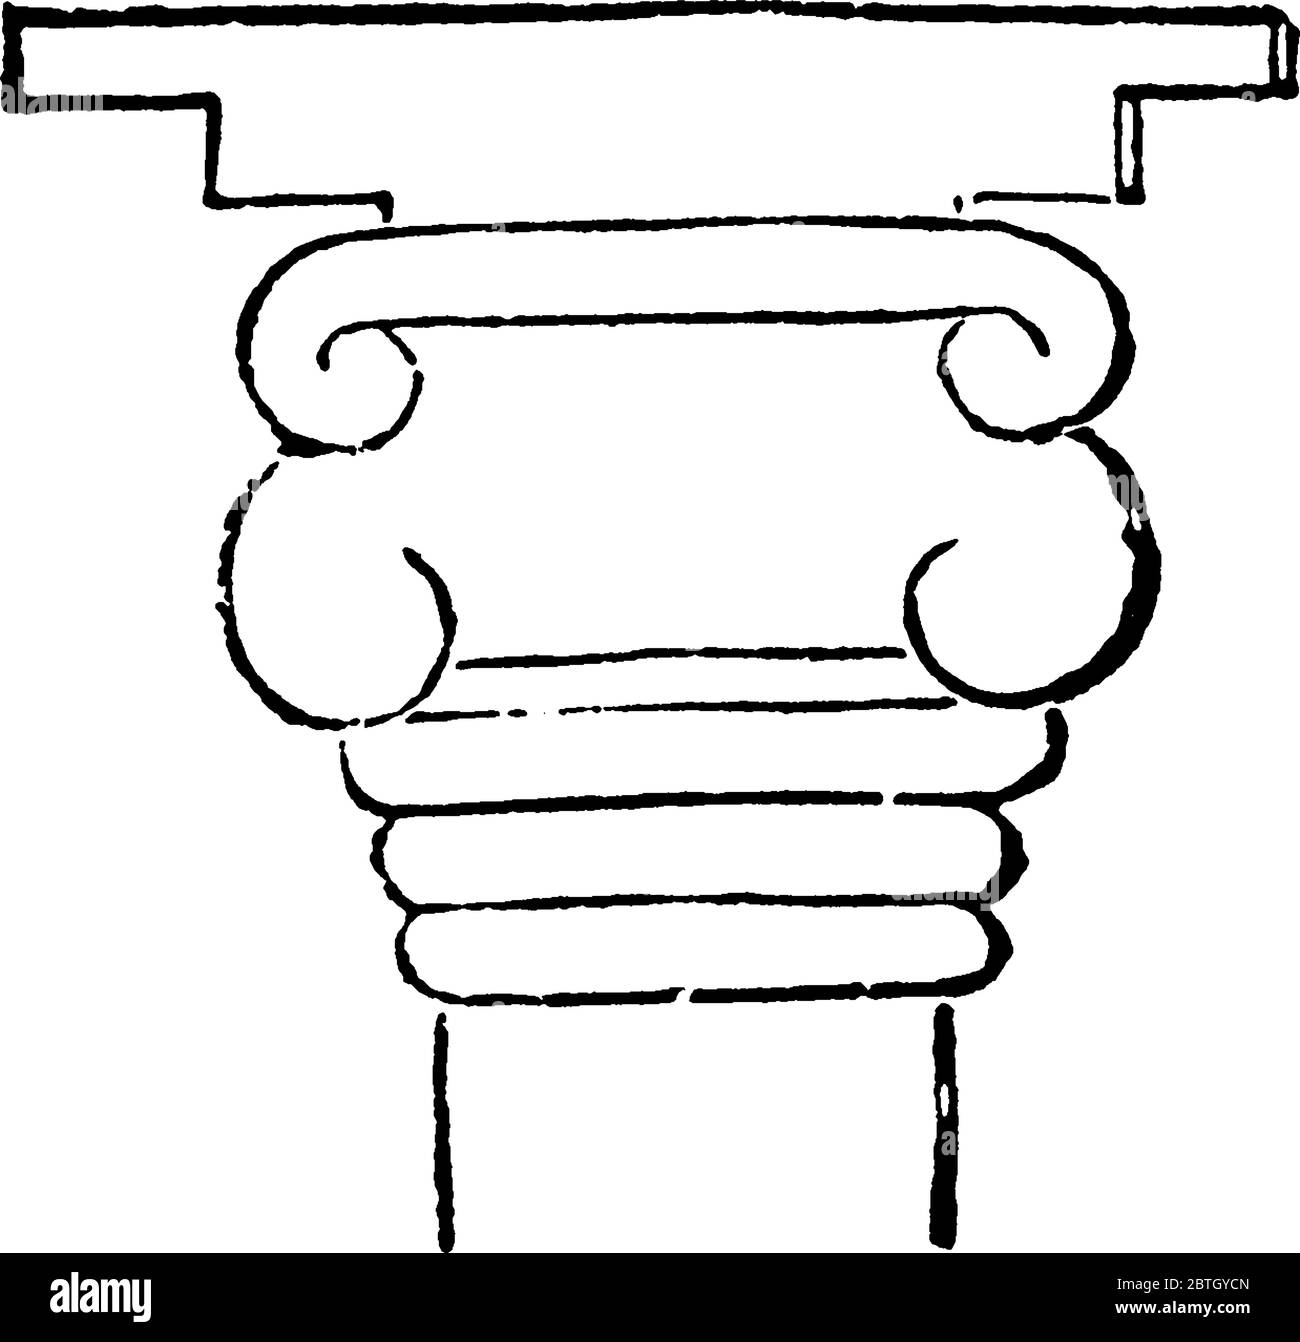 Alcuni rilievi ritraggono piccole façades di templi con capitelli. Questa figura mette in evidenza in modo preminente la somiglianza di molti dettagli con l'arte greca, la vinta Illustrazione Vettoriale